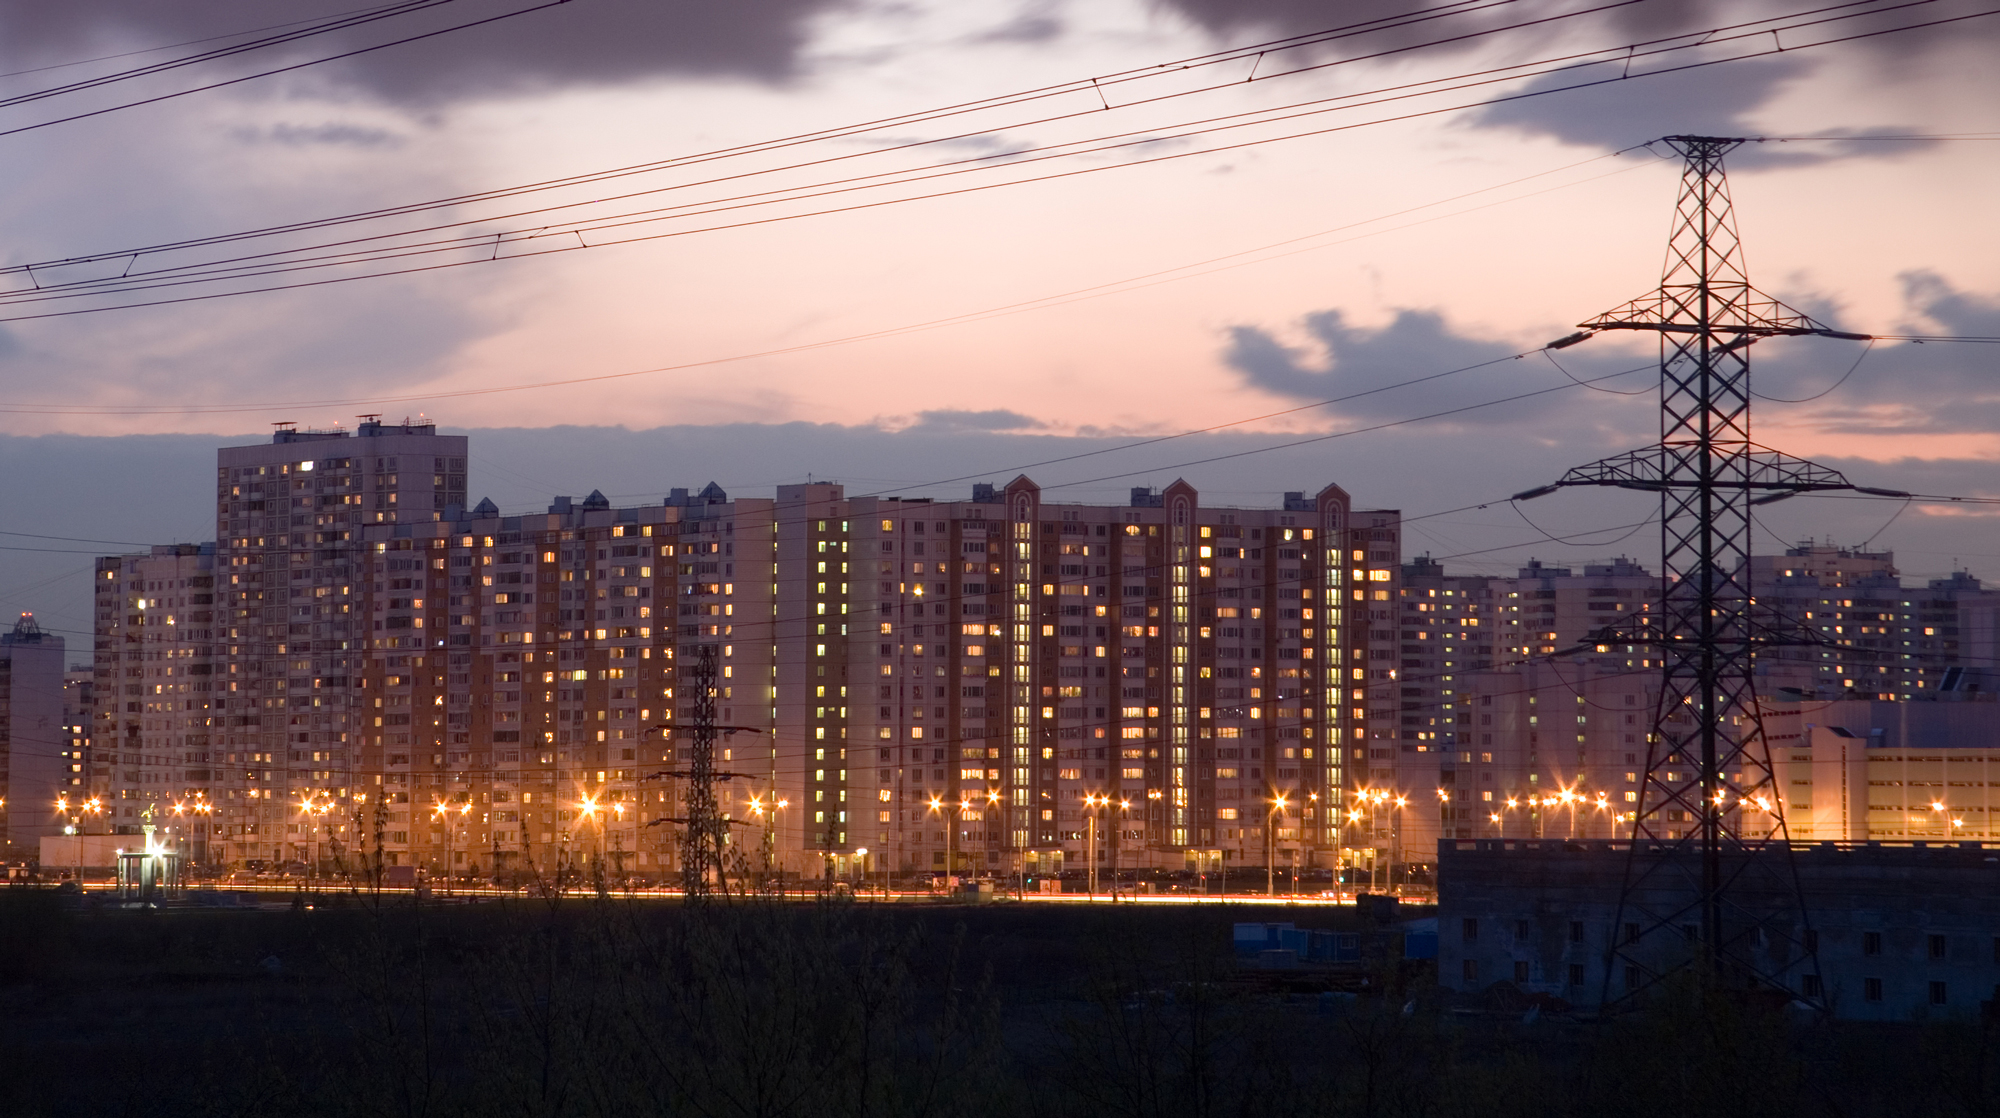 Глава «Роснано» считает, что отключение электроэнергии может случиться в стране через шесть-семь лет «в самый драматический момент» Фото: © GLOBAL LOOK press/Valery Lukyanov